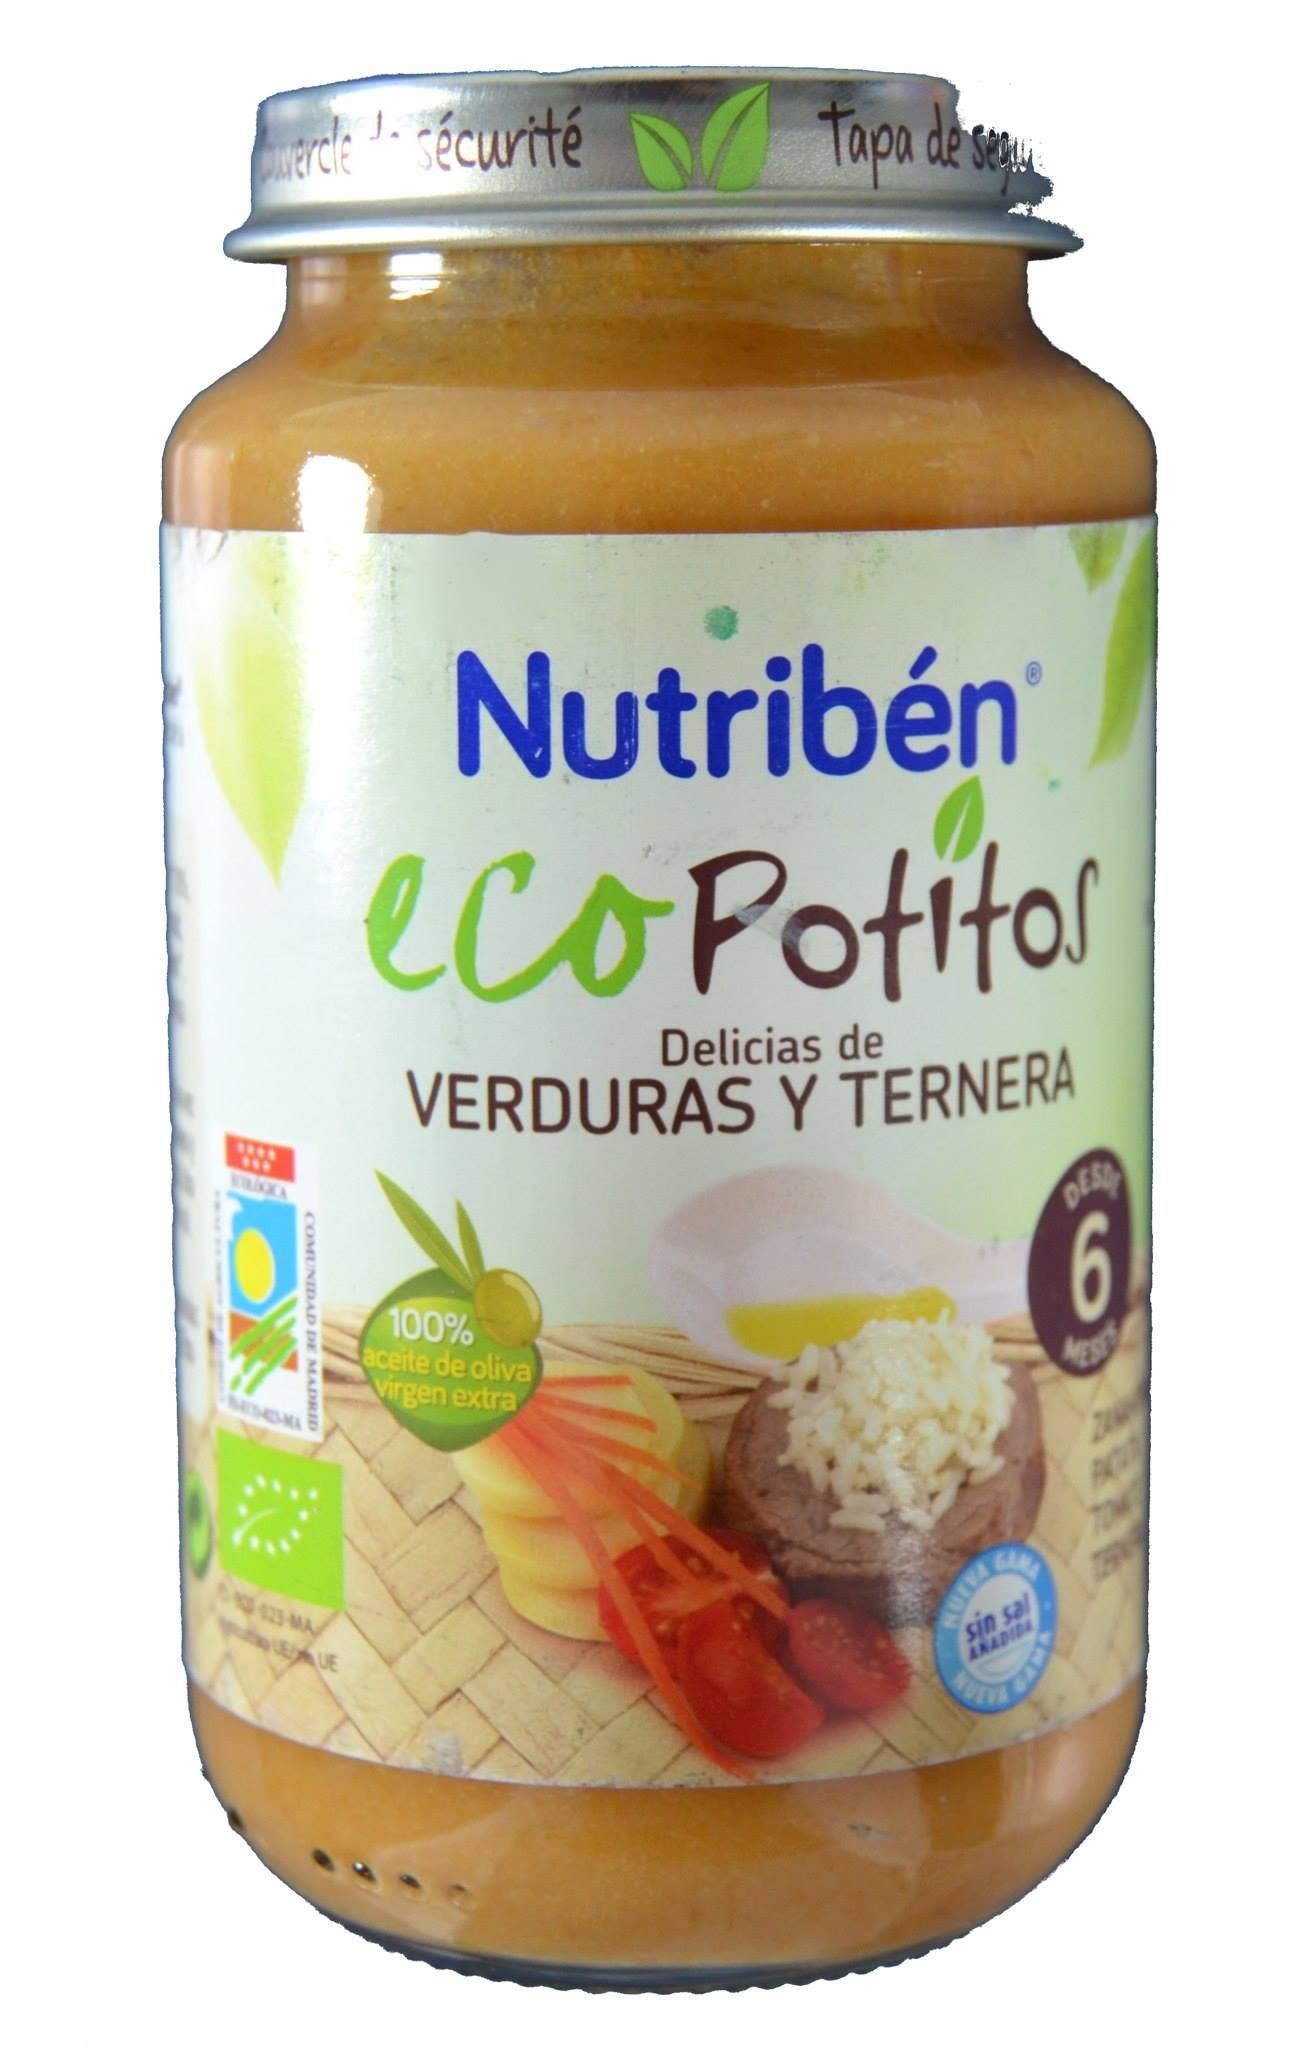 ECOPOTITOS VERDURAS Y TERNERA 250 G NUTRIBÉN - Farmacia Anna Riba